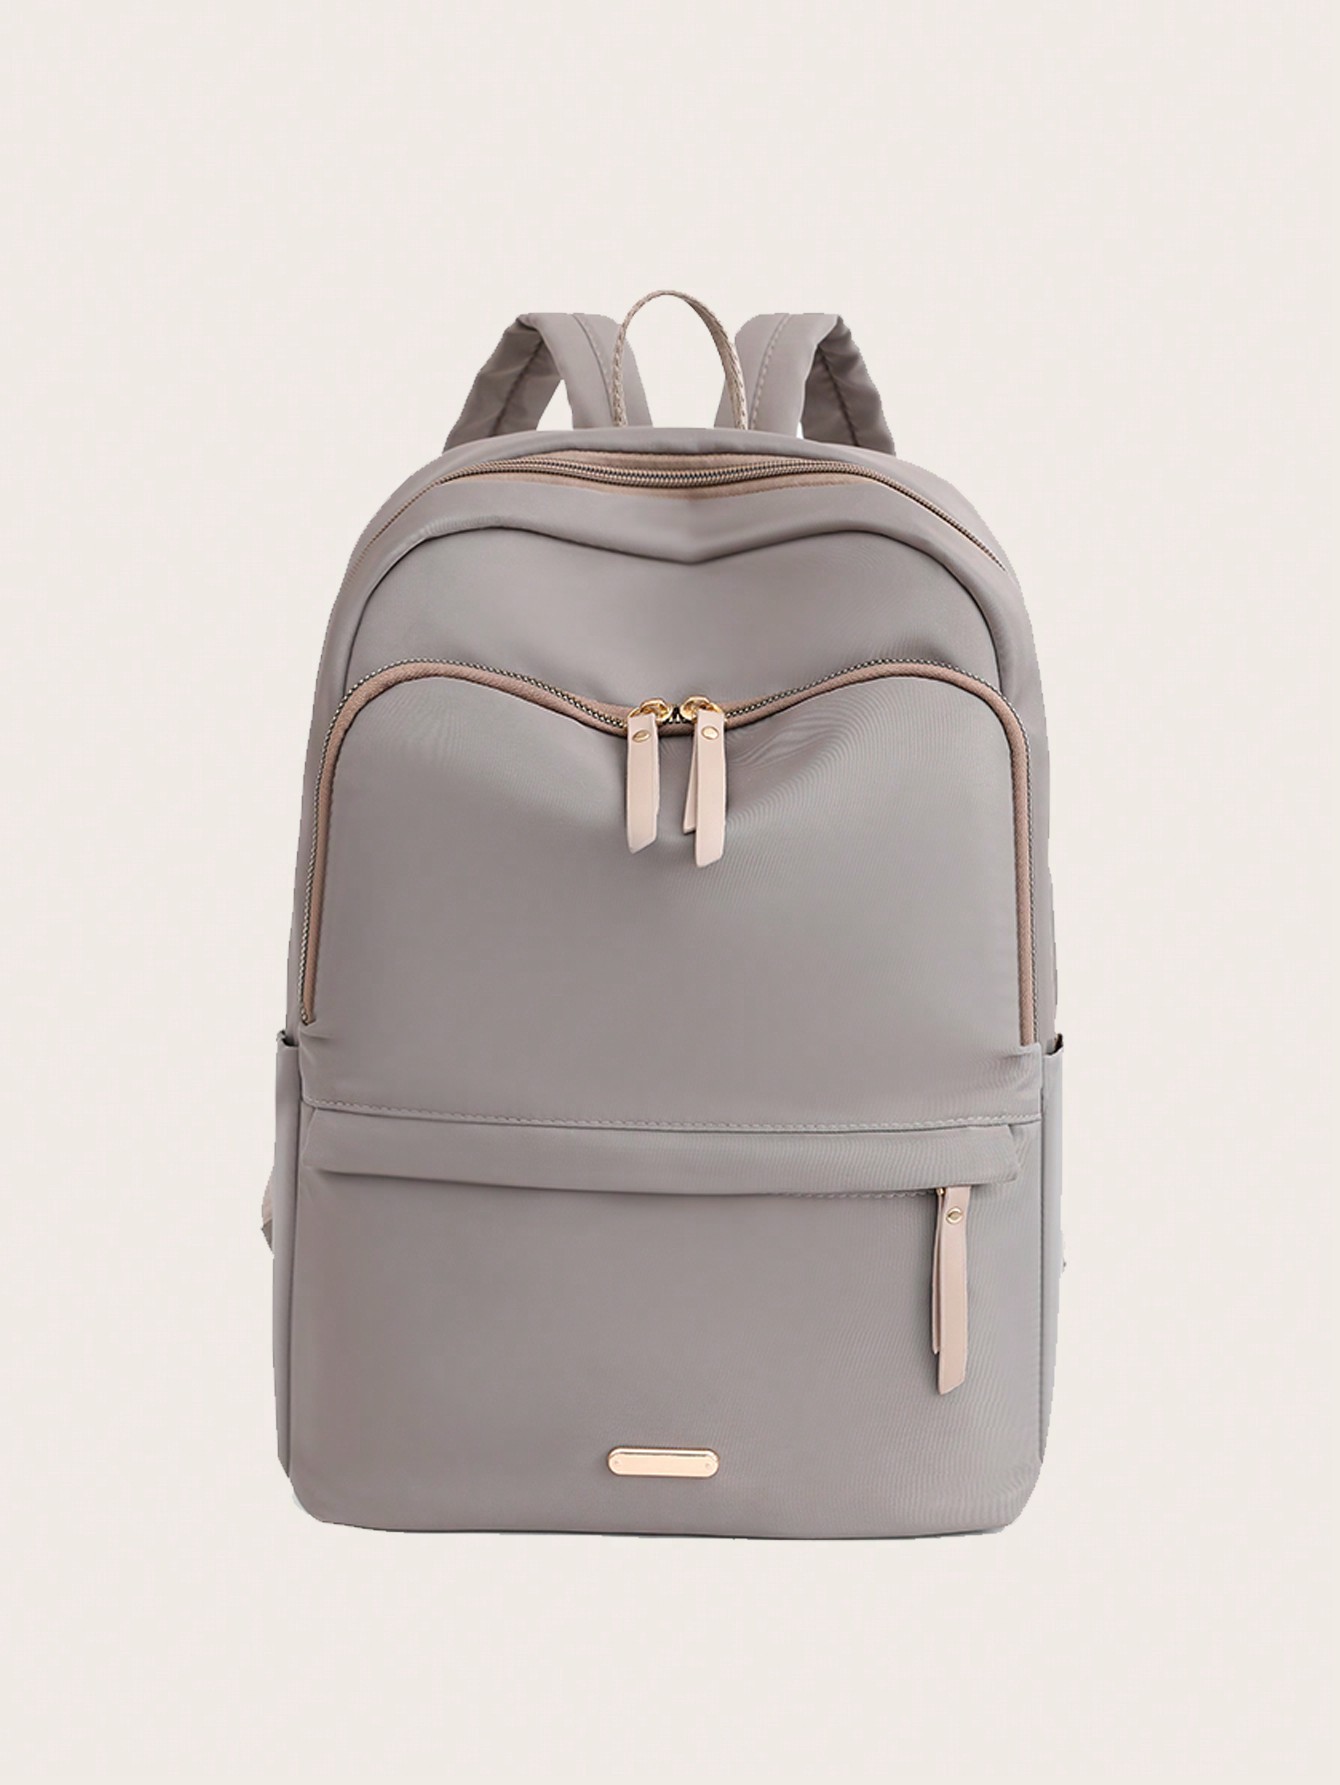 Водонепроницаемый портативный рюкзак большой емкости с передним карманом, хаки мужской минималистичный рюкзак большой вместимости серый